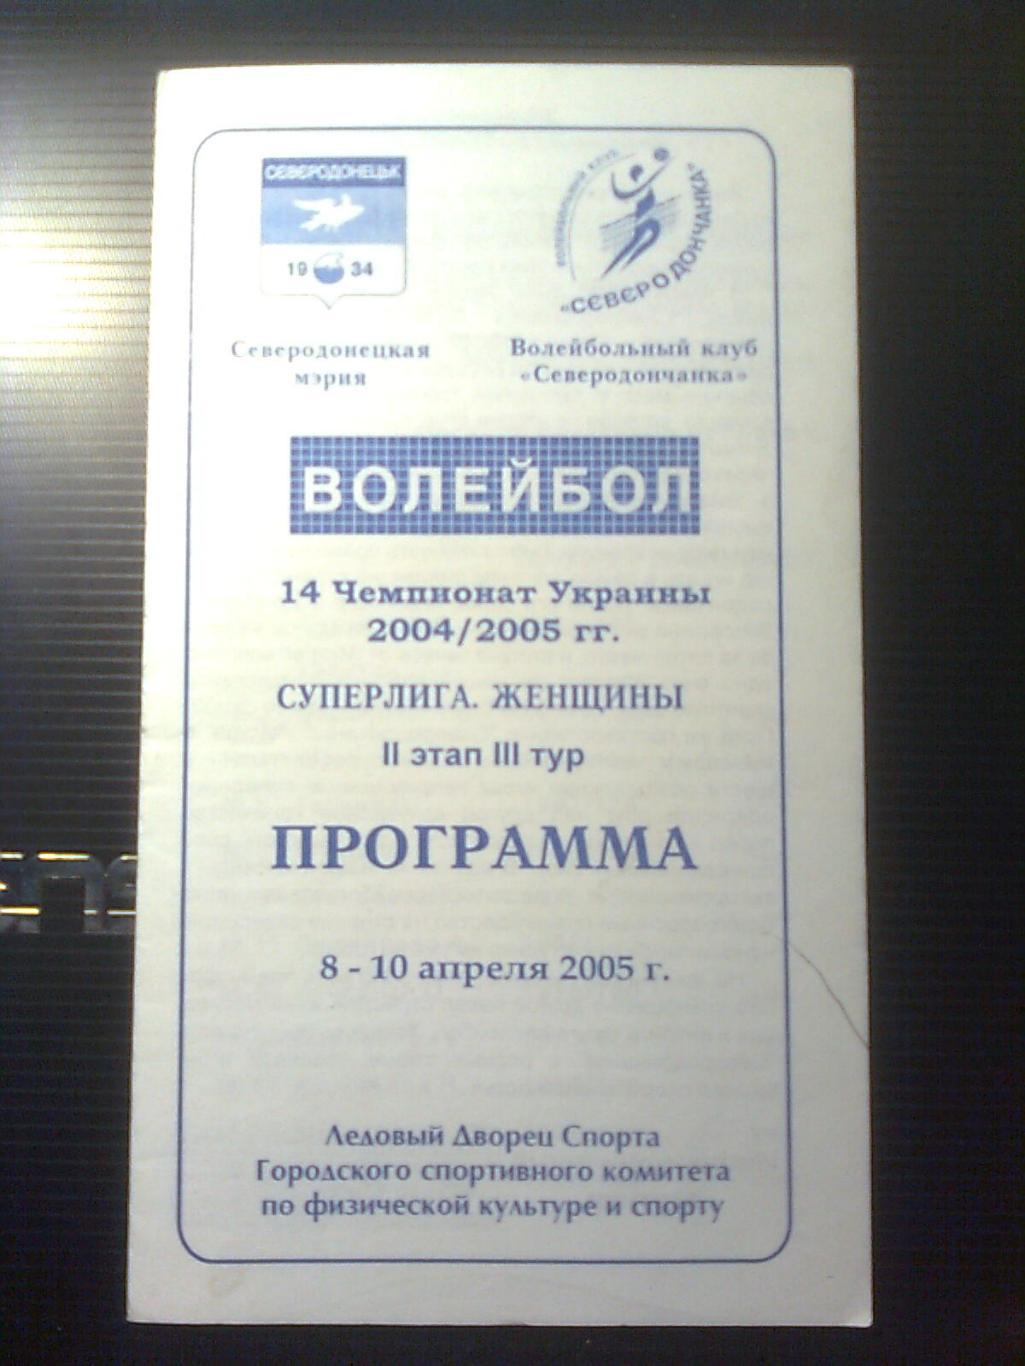 14 Чемпионат Украины по волейболу 2004-2005 г.г.